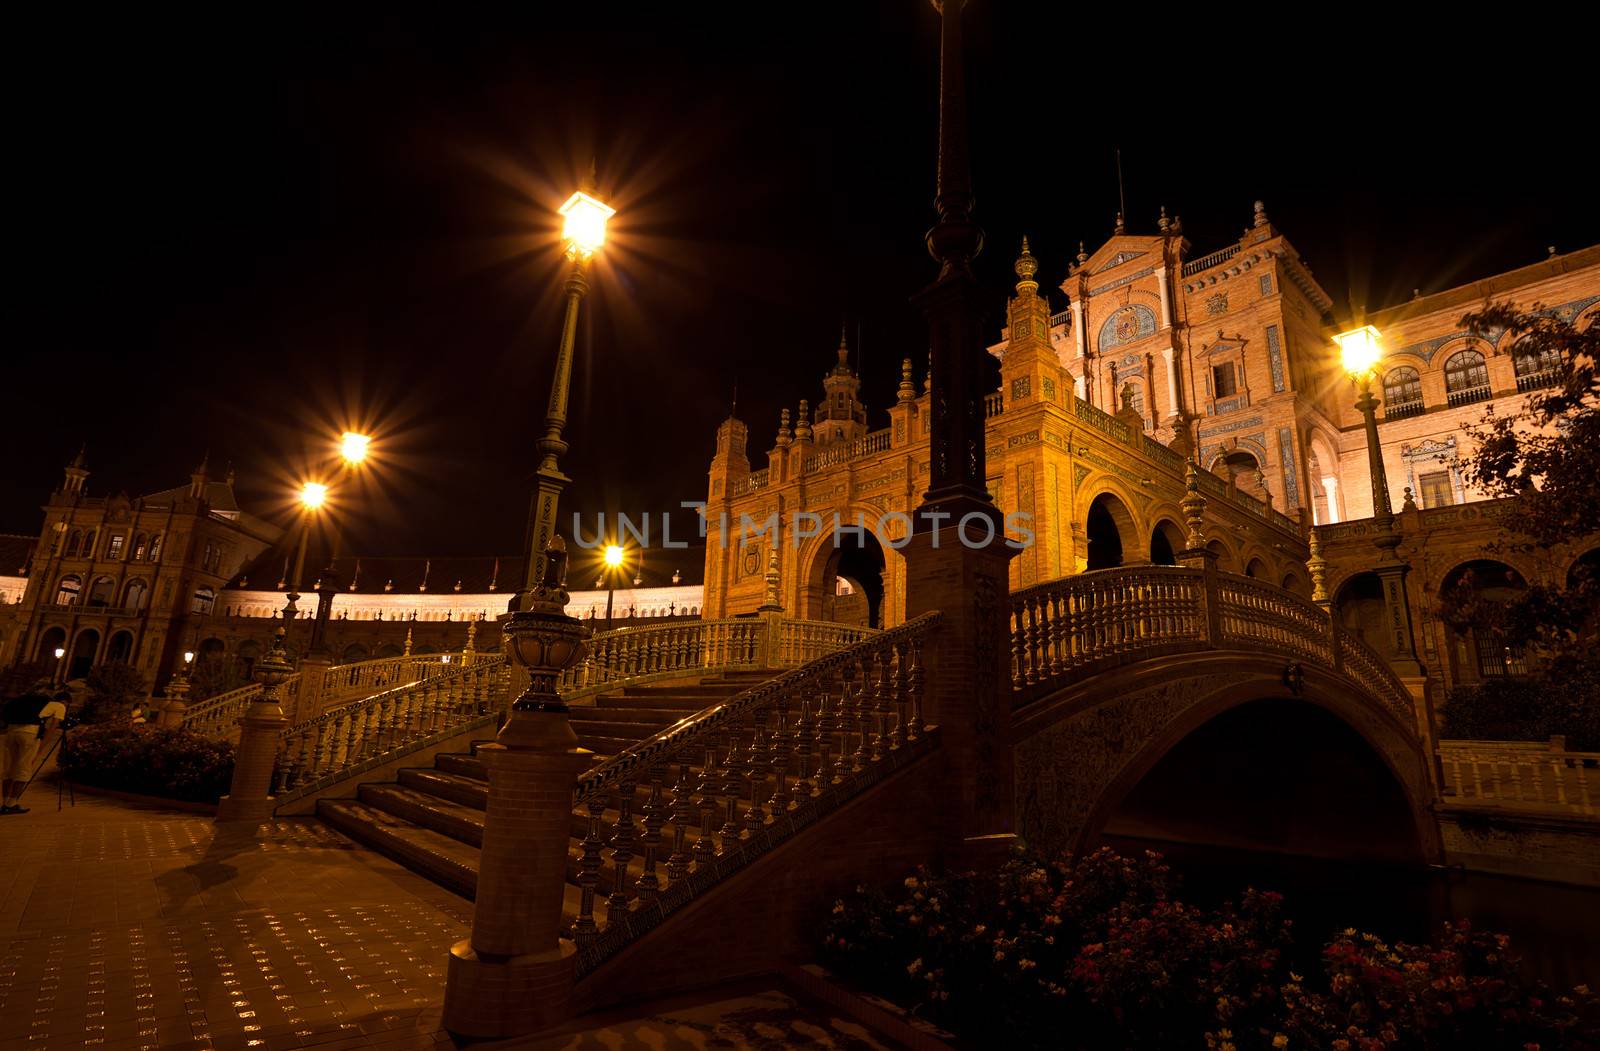 Plaza de Espana at night, Seville by catolla